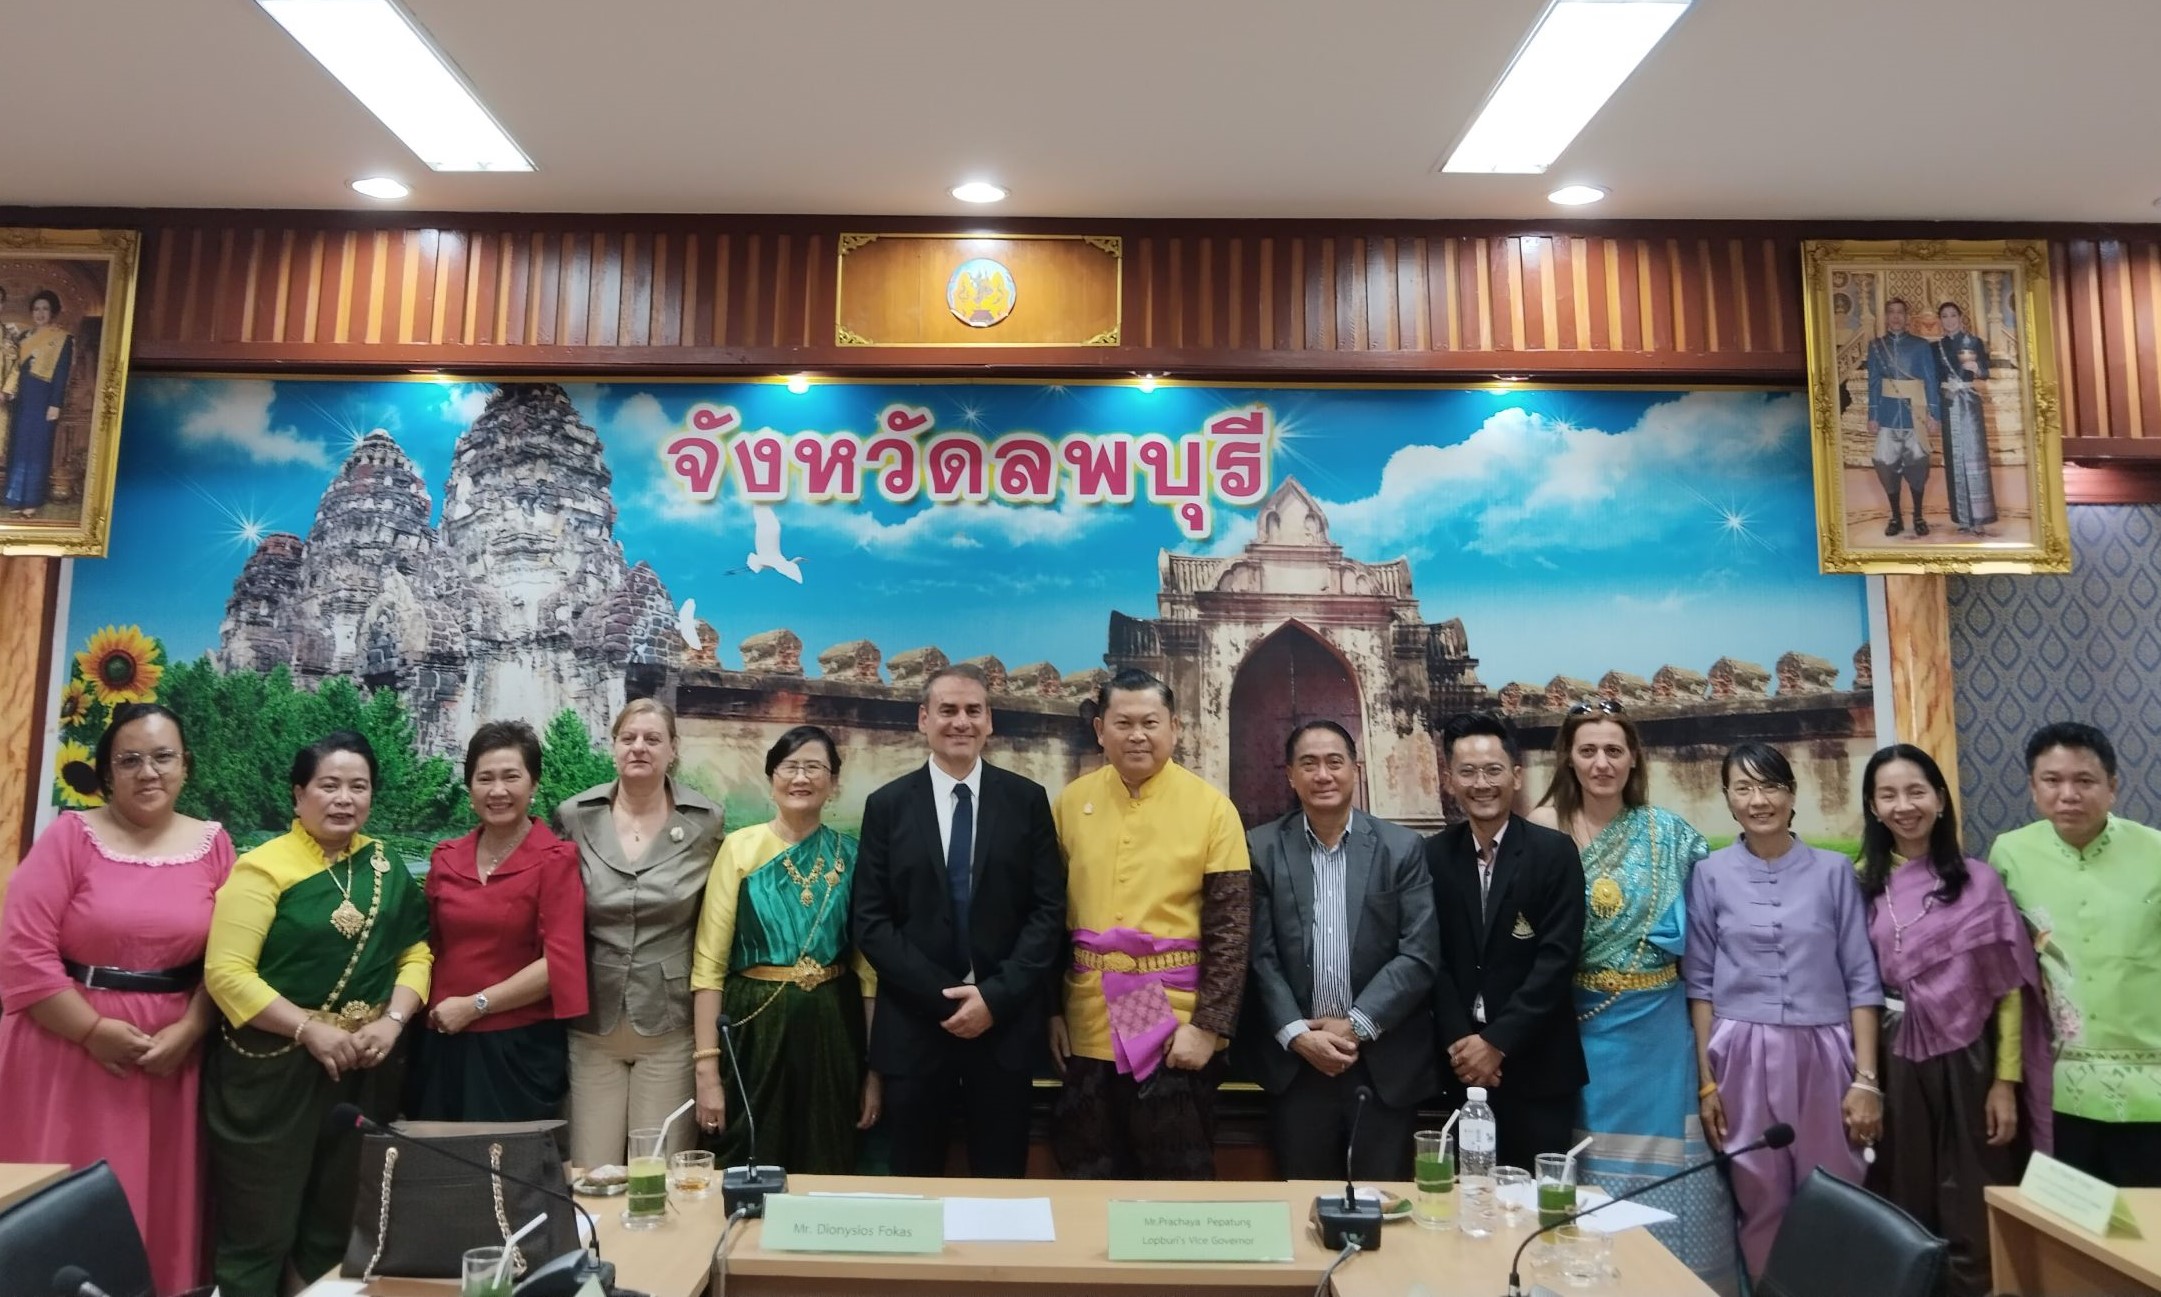 Στο Δημαρχείο του Lopburi μετά την εθιμοτυπική συνάντηση